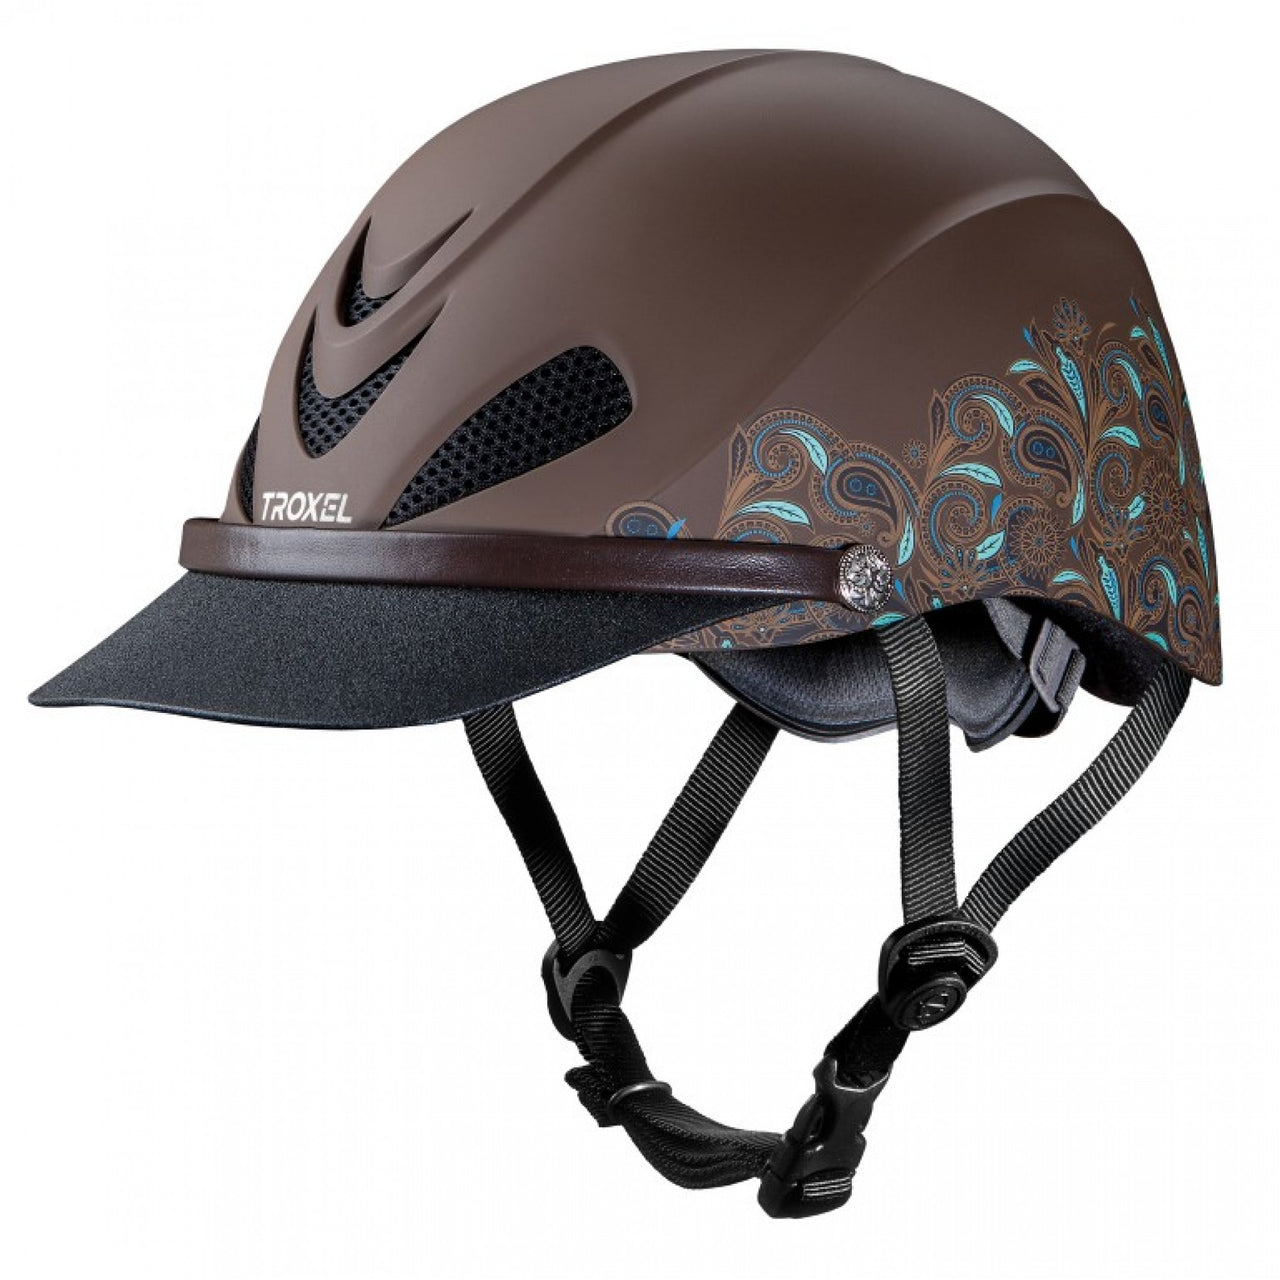 Troxel Low-Profile Maximum Ventilation All-Trails Helmet - Dakota